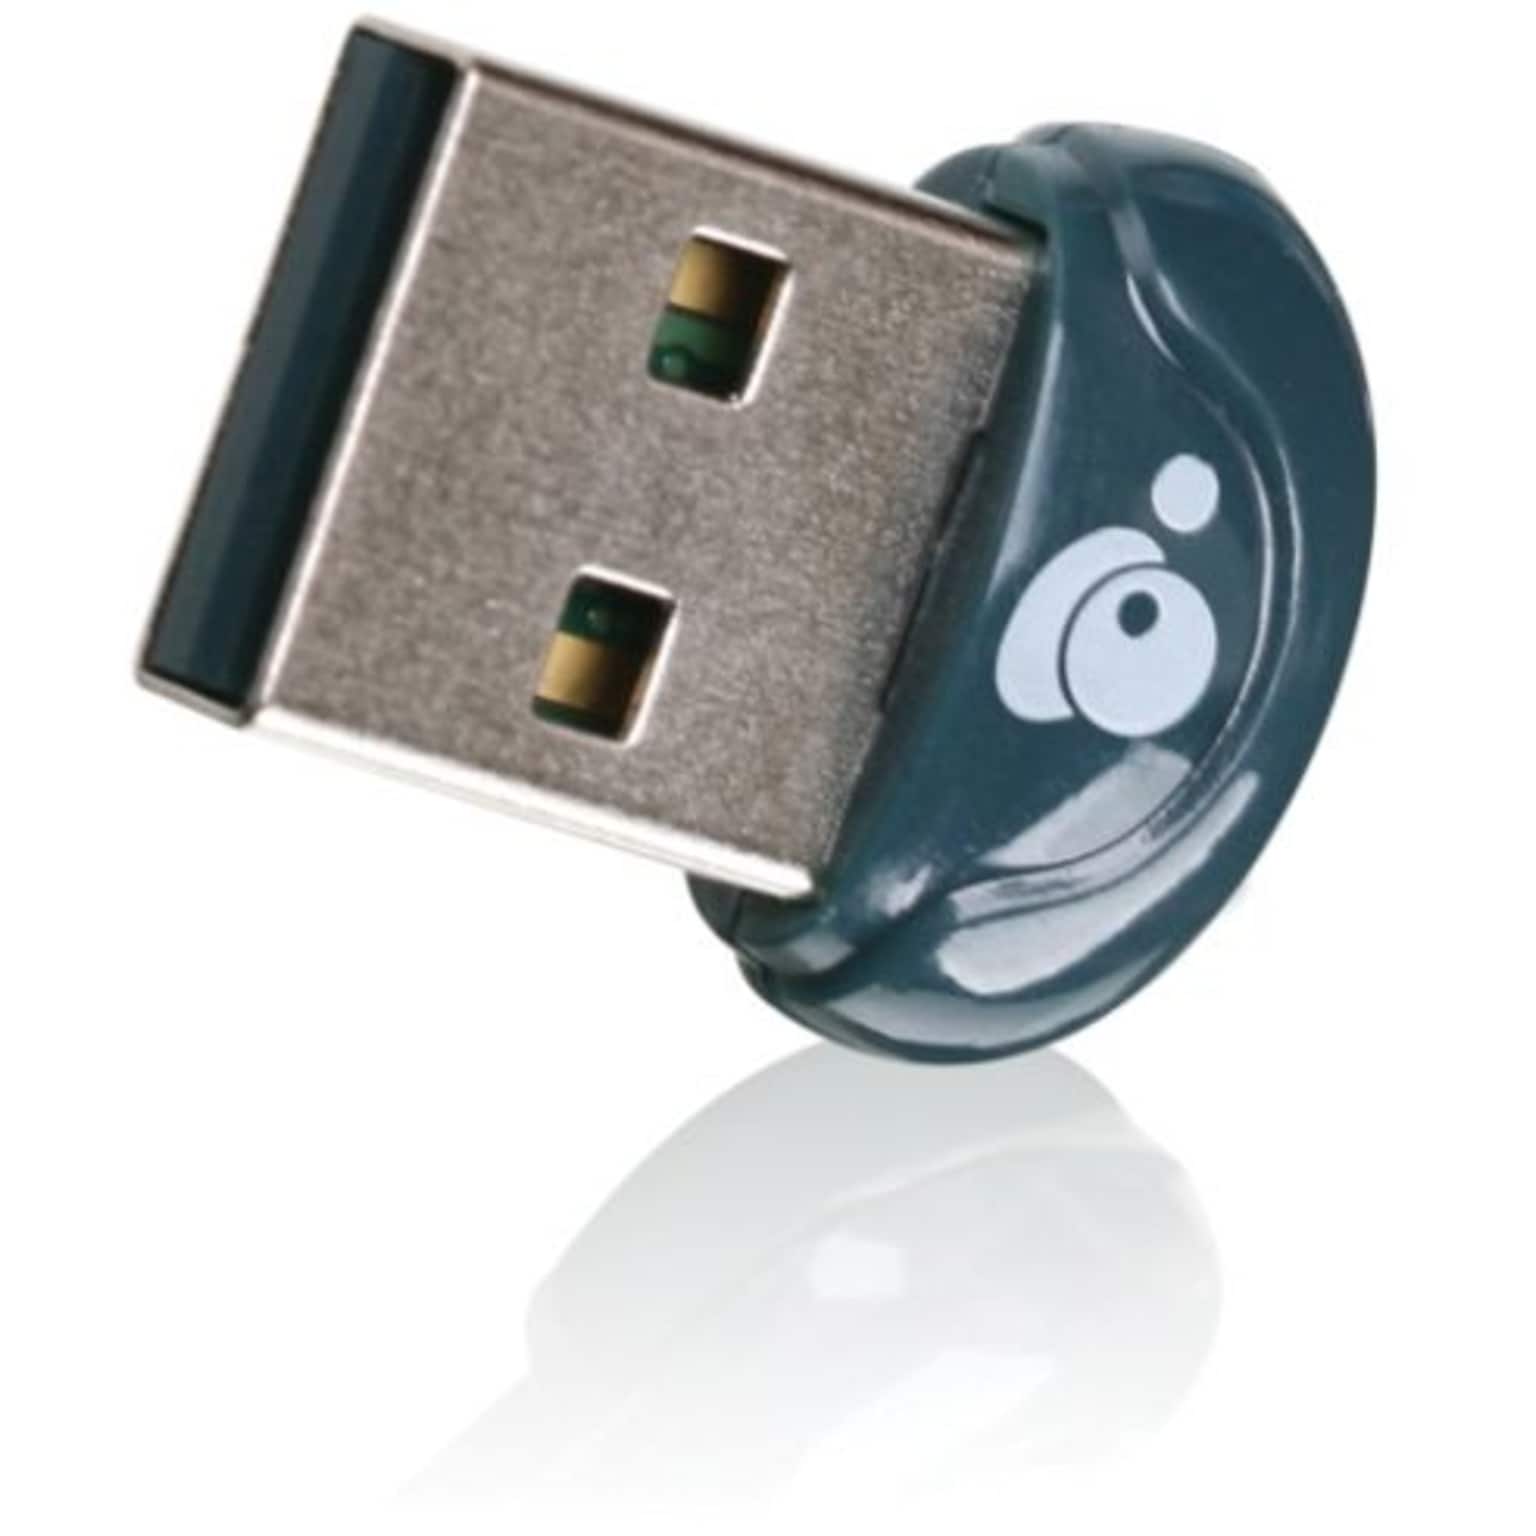 Iogear® GBU521W6 Micro USB Bluetooth 4.0 Adapter | Quill.com